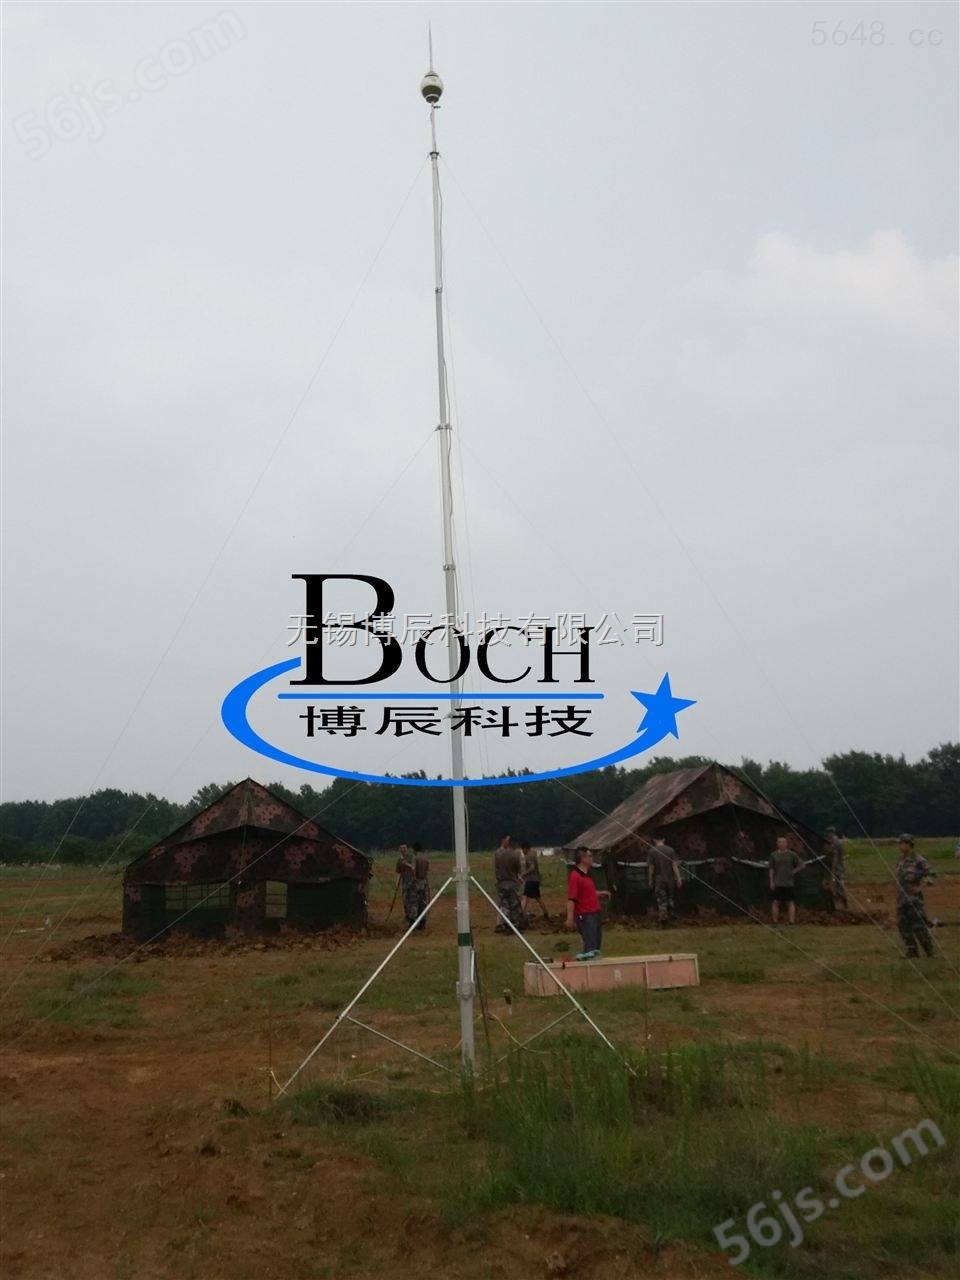 BC-026车载应急升降杆 BC-03.5便携式升降杆 BC-020自锁式升降杆